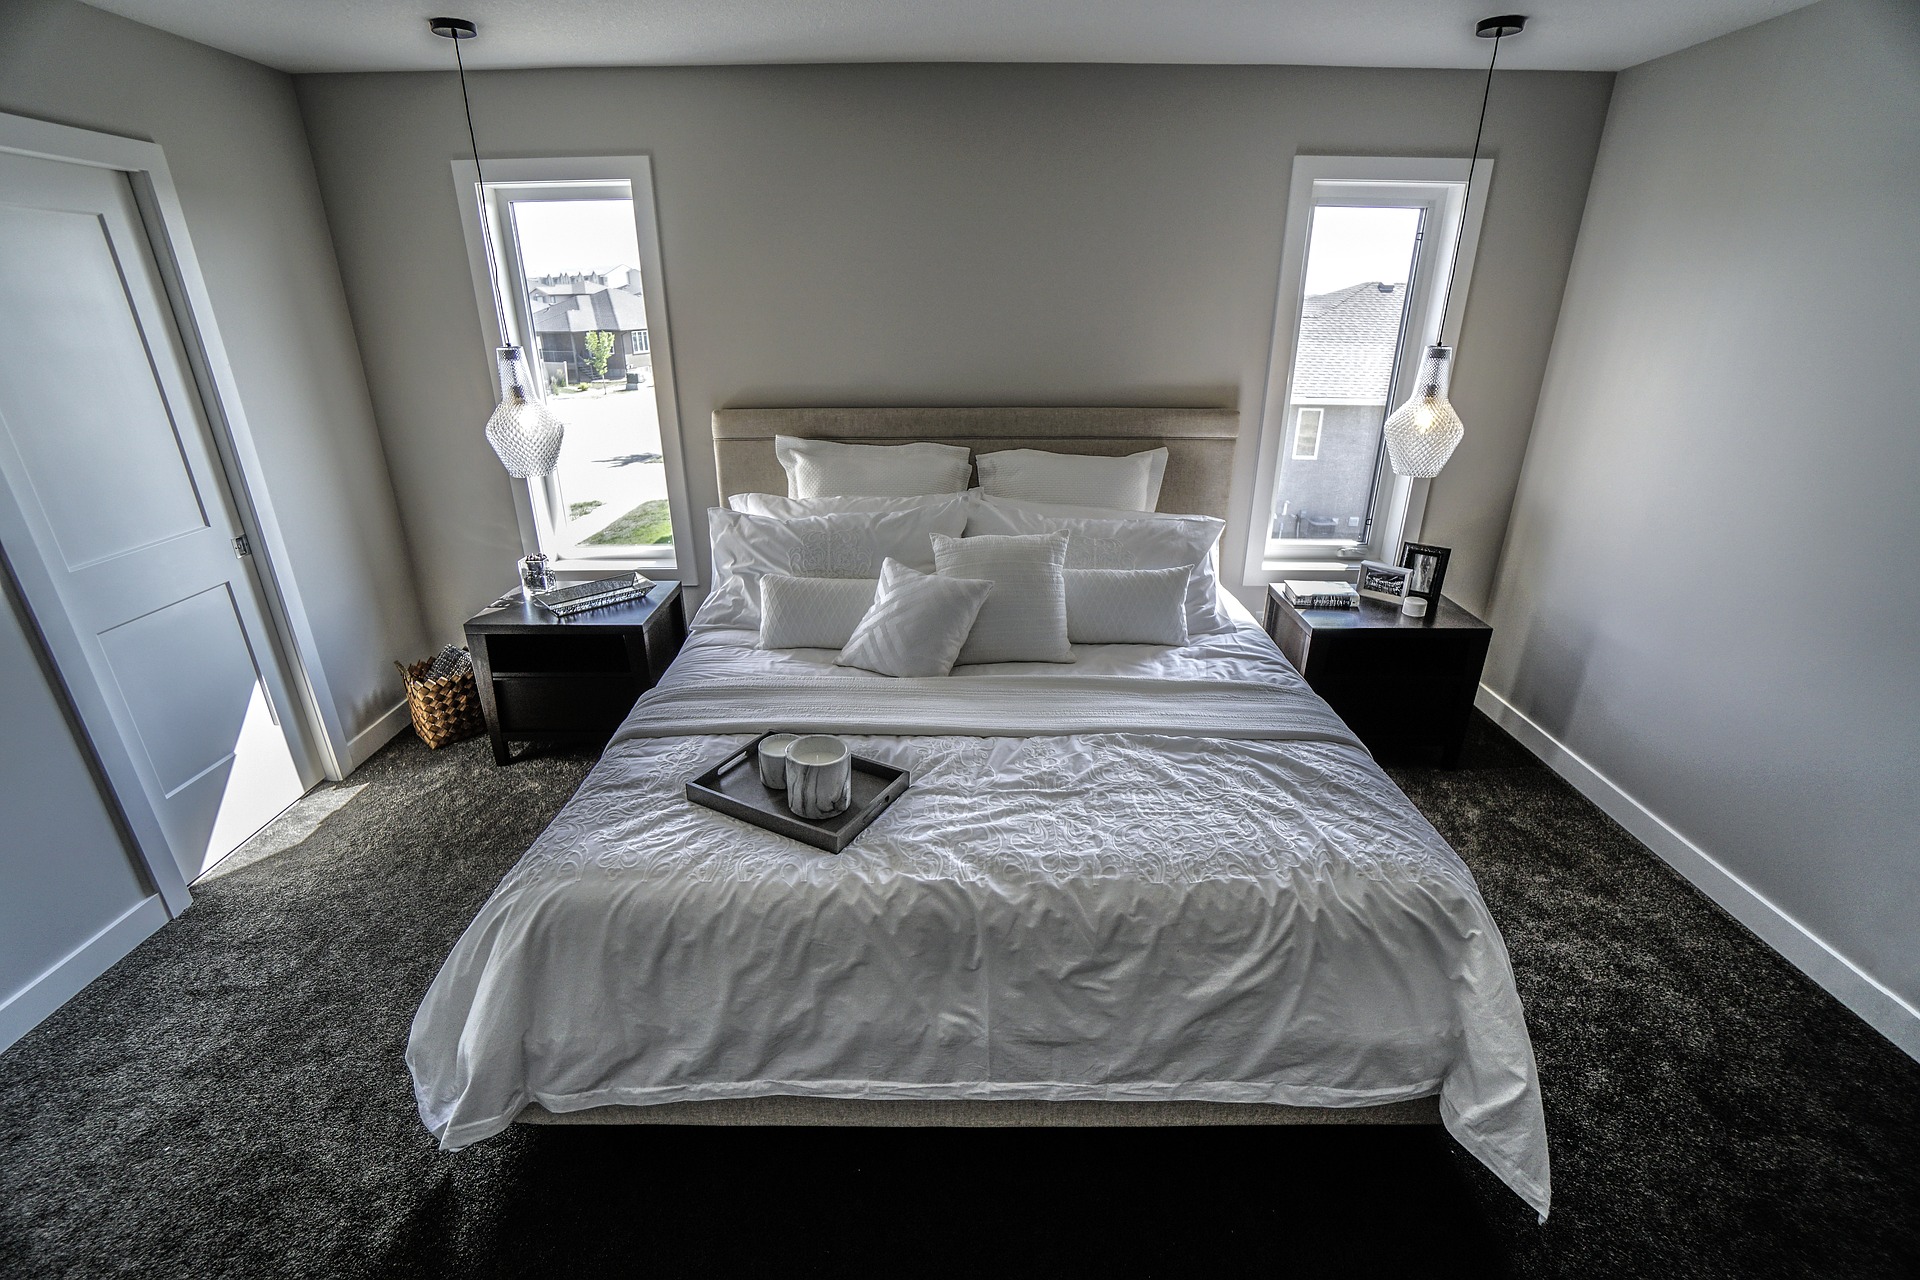 Foto de um quarto com cama branca e carpete cinza. Imagem ilustrativa para o texto manter seus carpetes limpos.